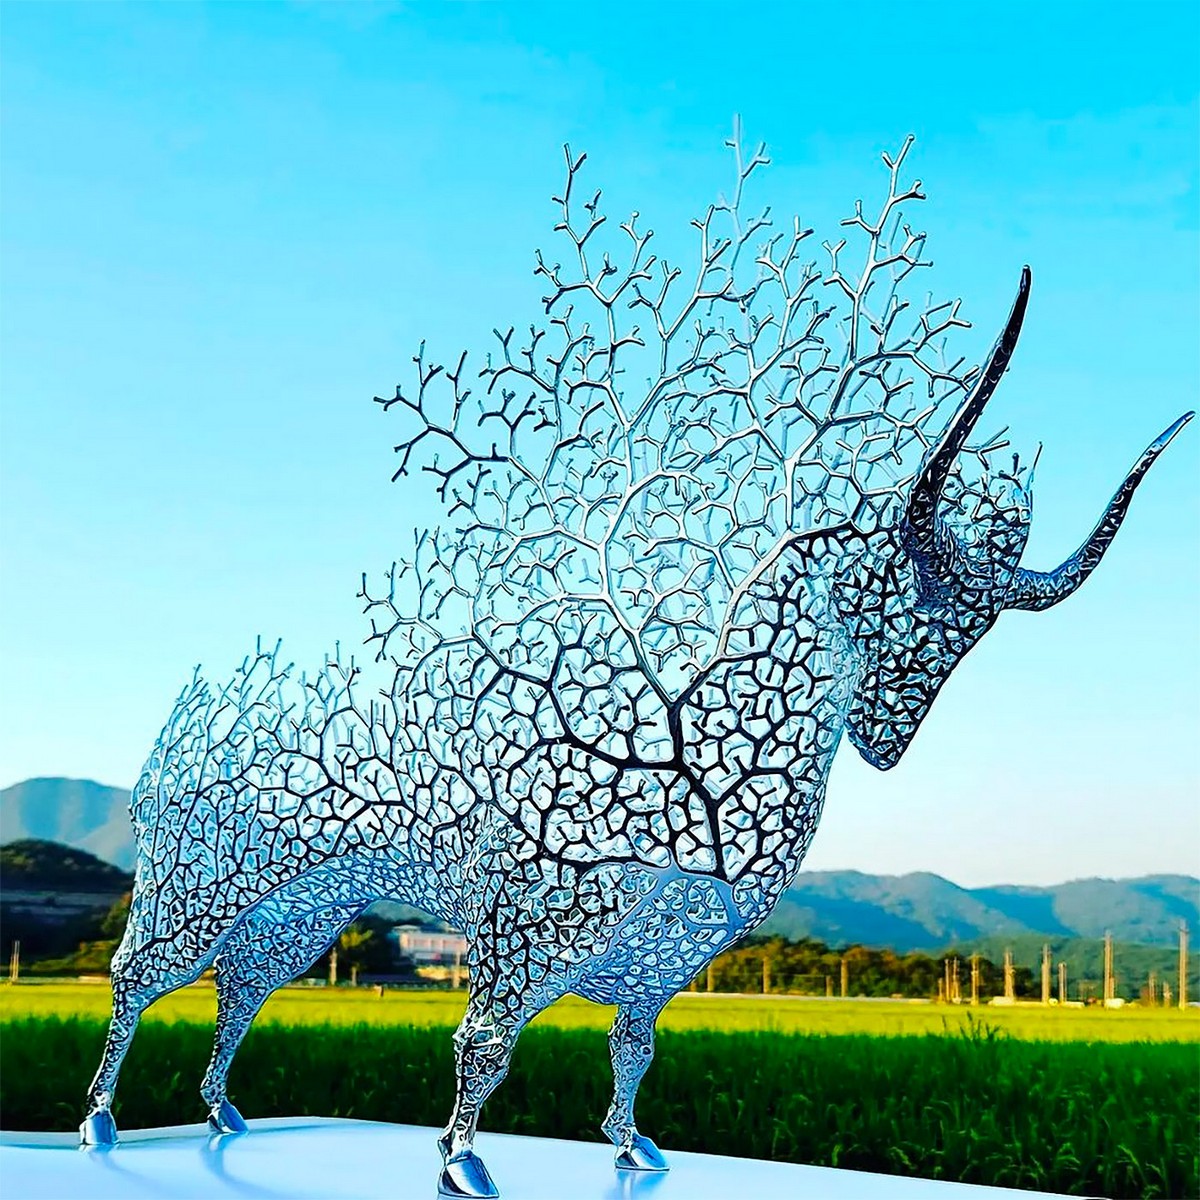 Фигуративные металлические скульптуры от Кан Дон Хена